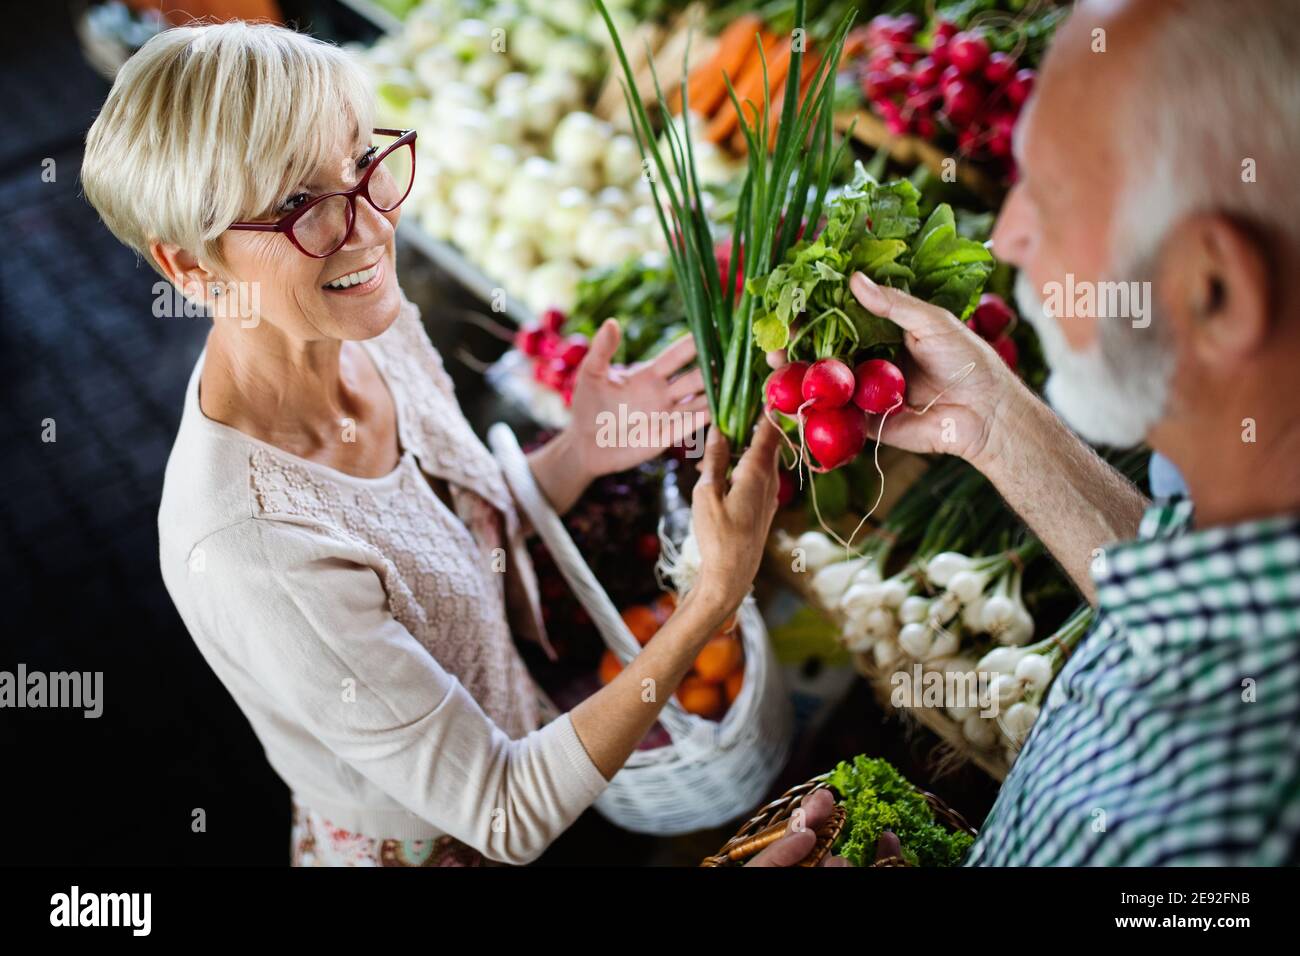 Magnifique Portrait de couple de personnes âgées dans le marché alimentaire buing Banque D'Images